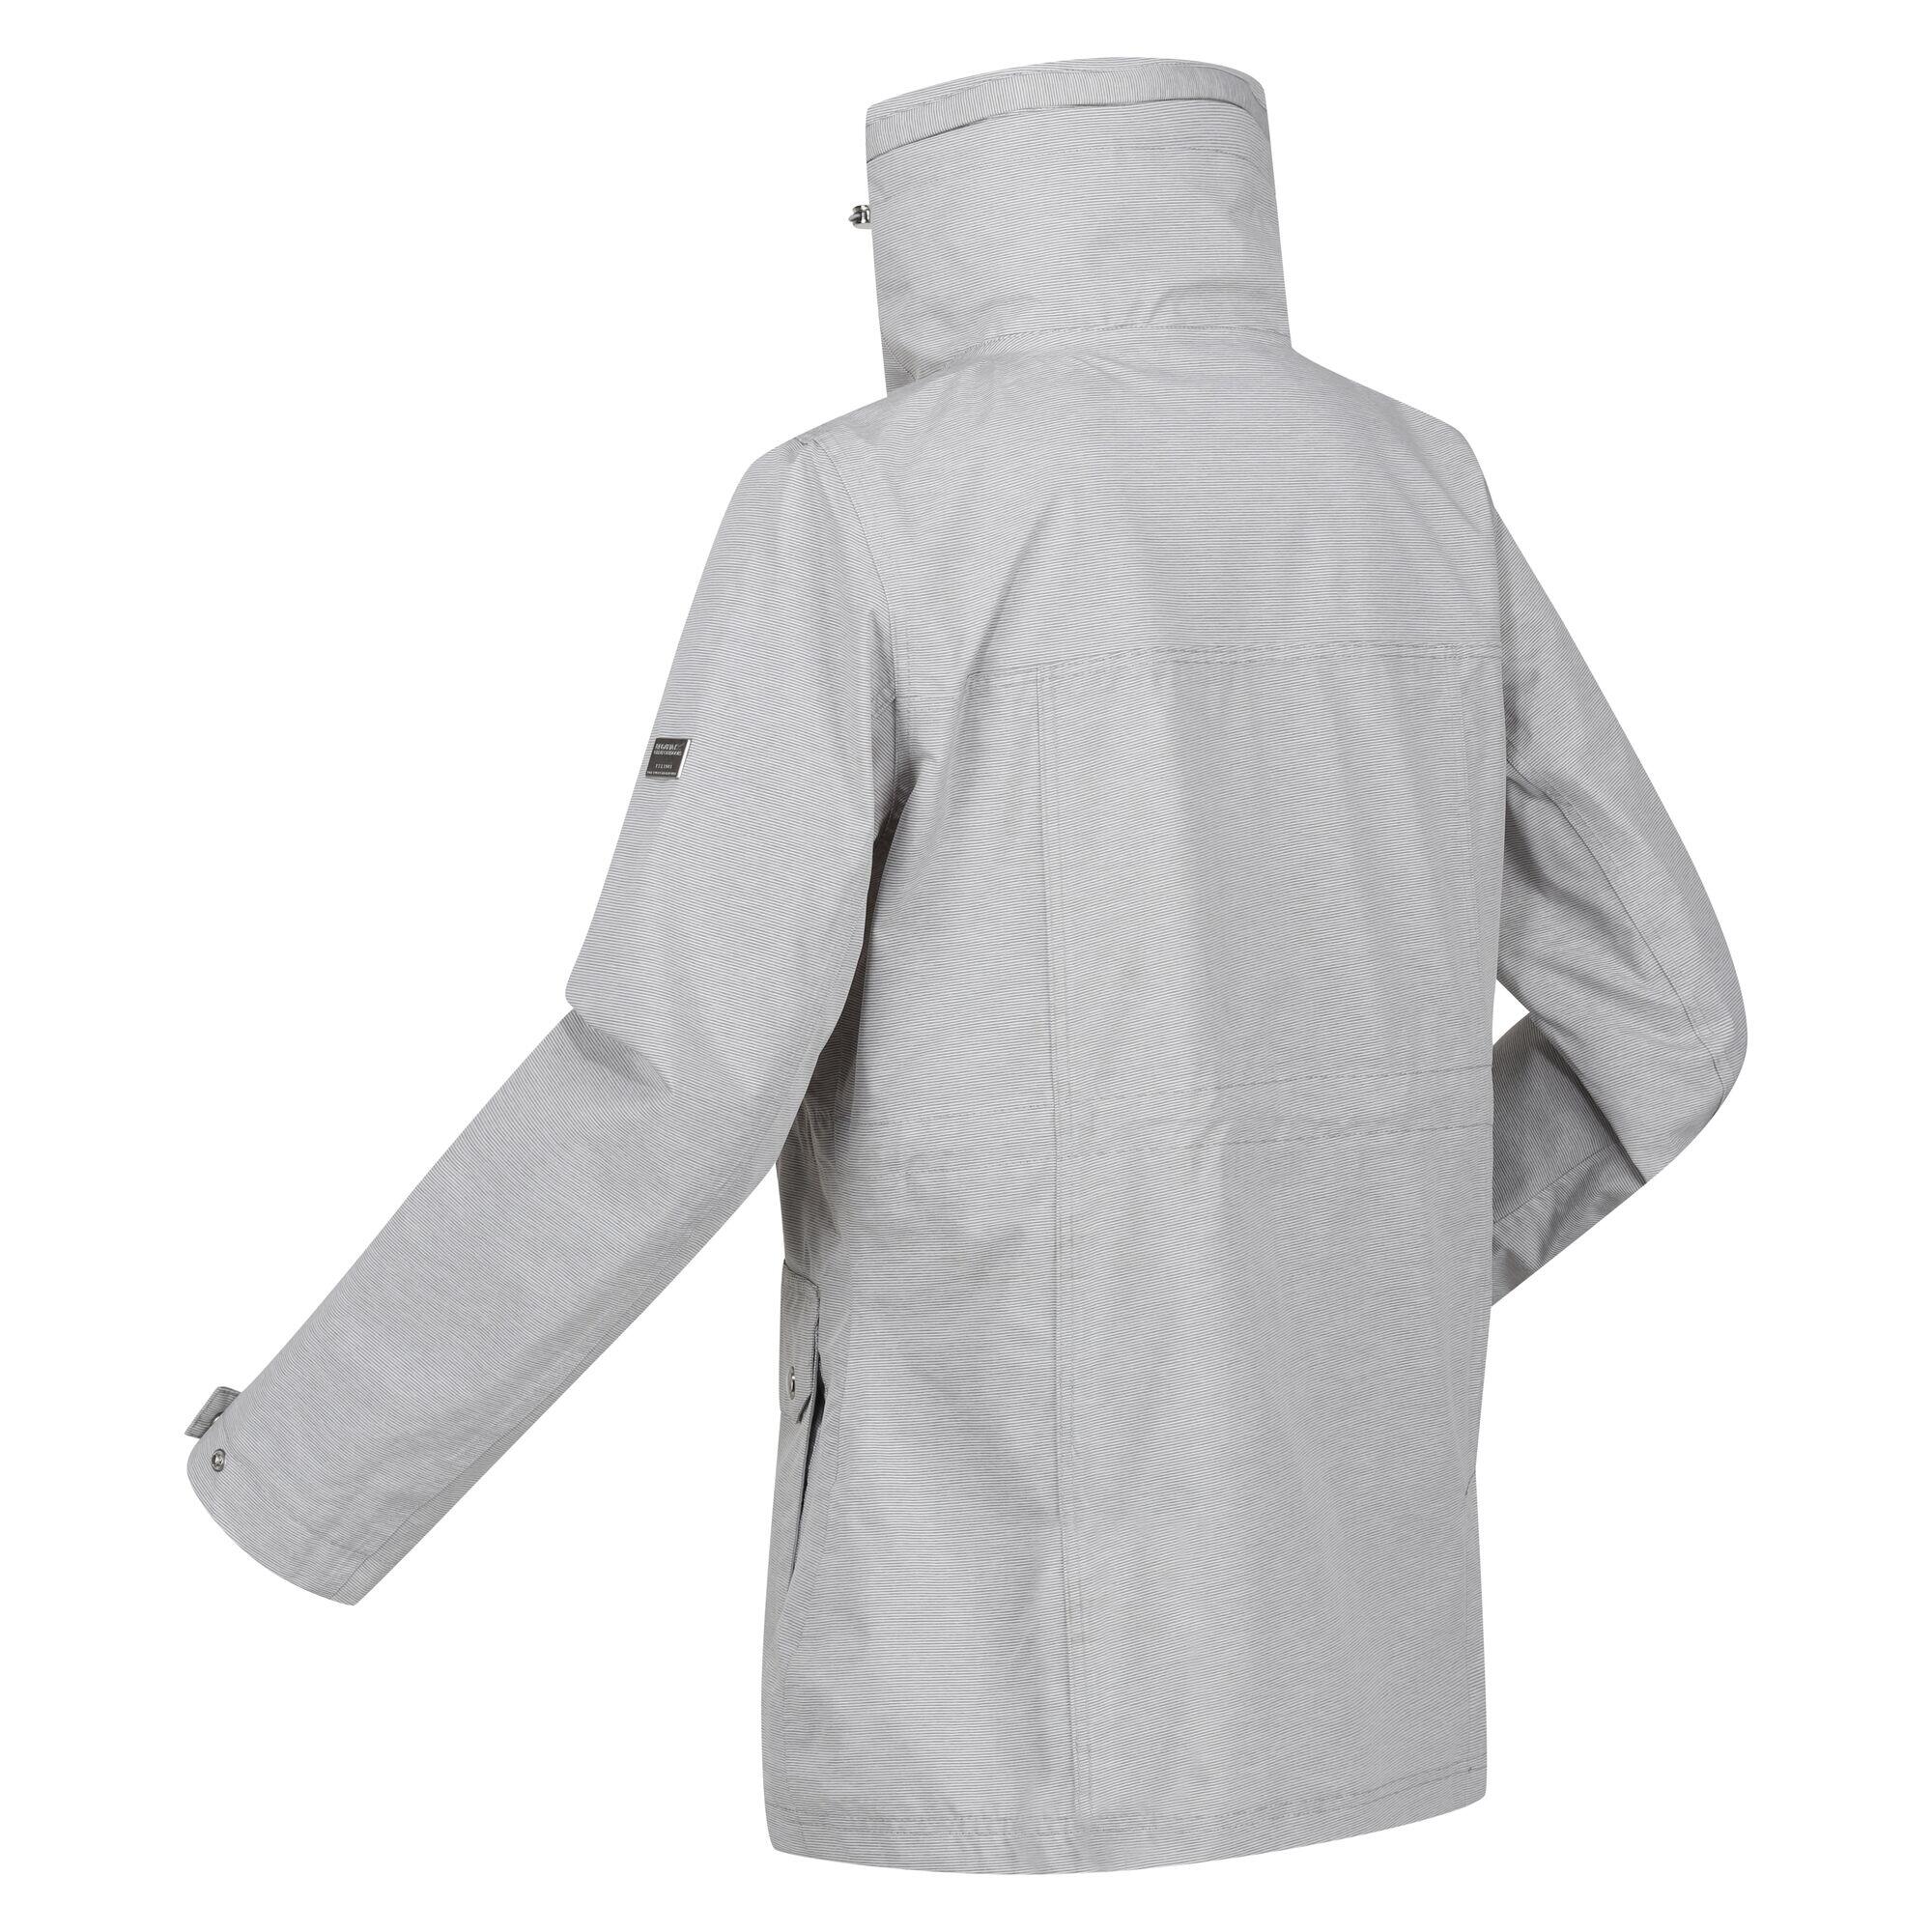 Womens/Ladies Novalee Raincoat (Silver Grey) 4/5